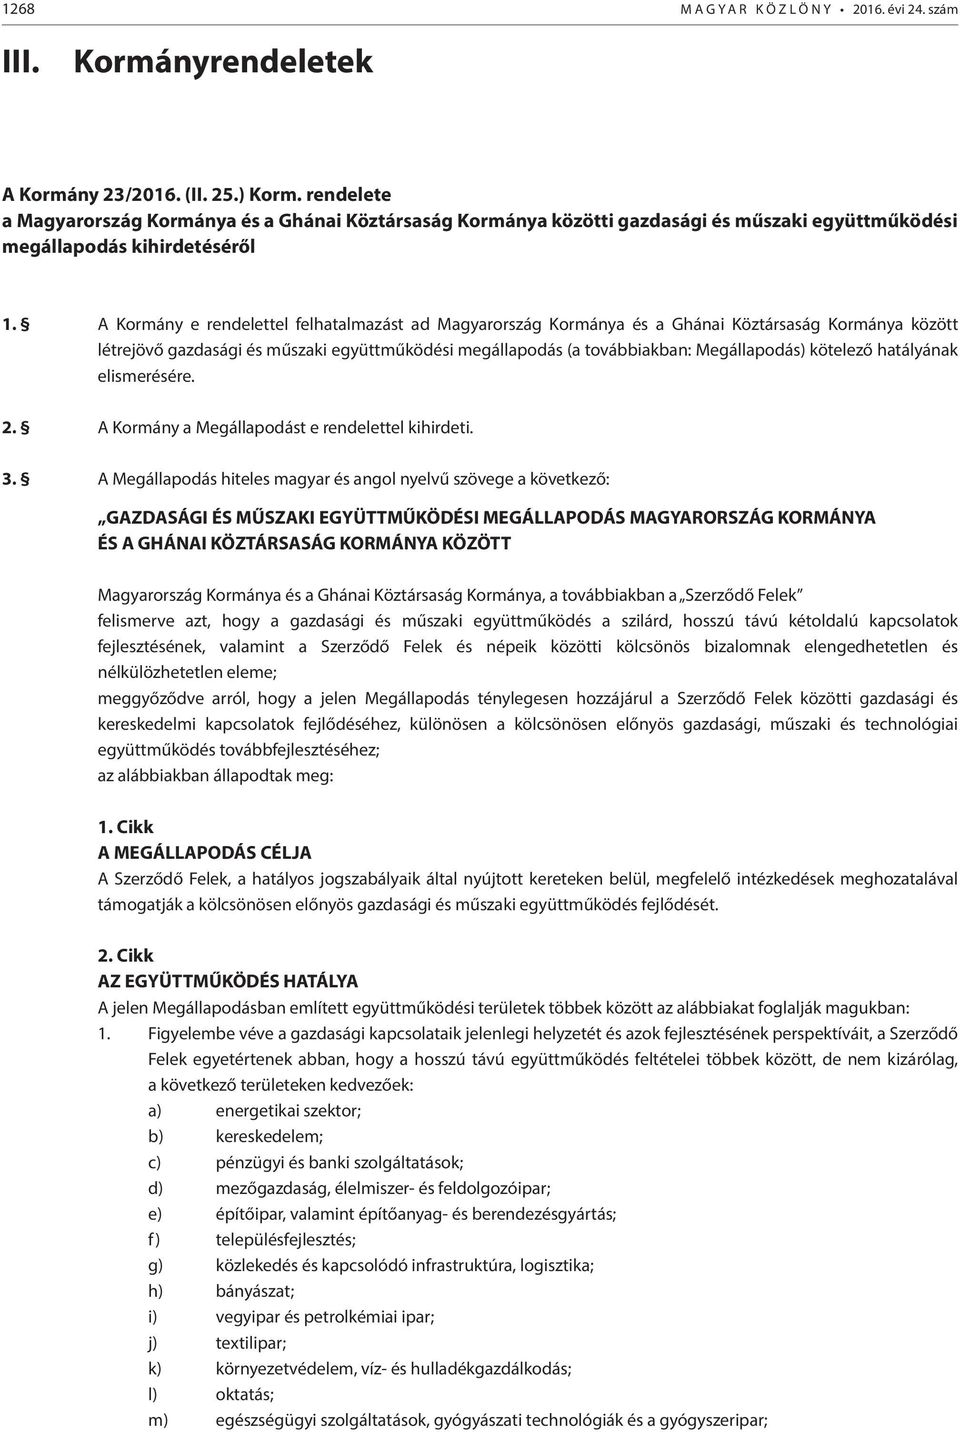 A Kormány e rendelettel felhatalmazást ad Magyarország Kormánya és a Ghánai Köztársaság Kormánya között létrejövő gazdasági és műszaki együttműködési megállapodás (a továbbiakban: Megállapodás)